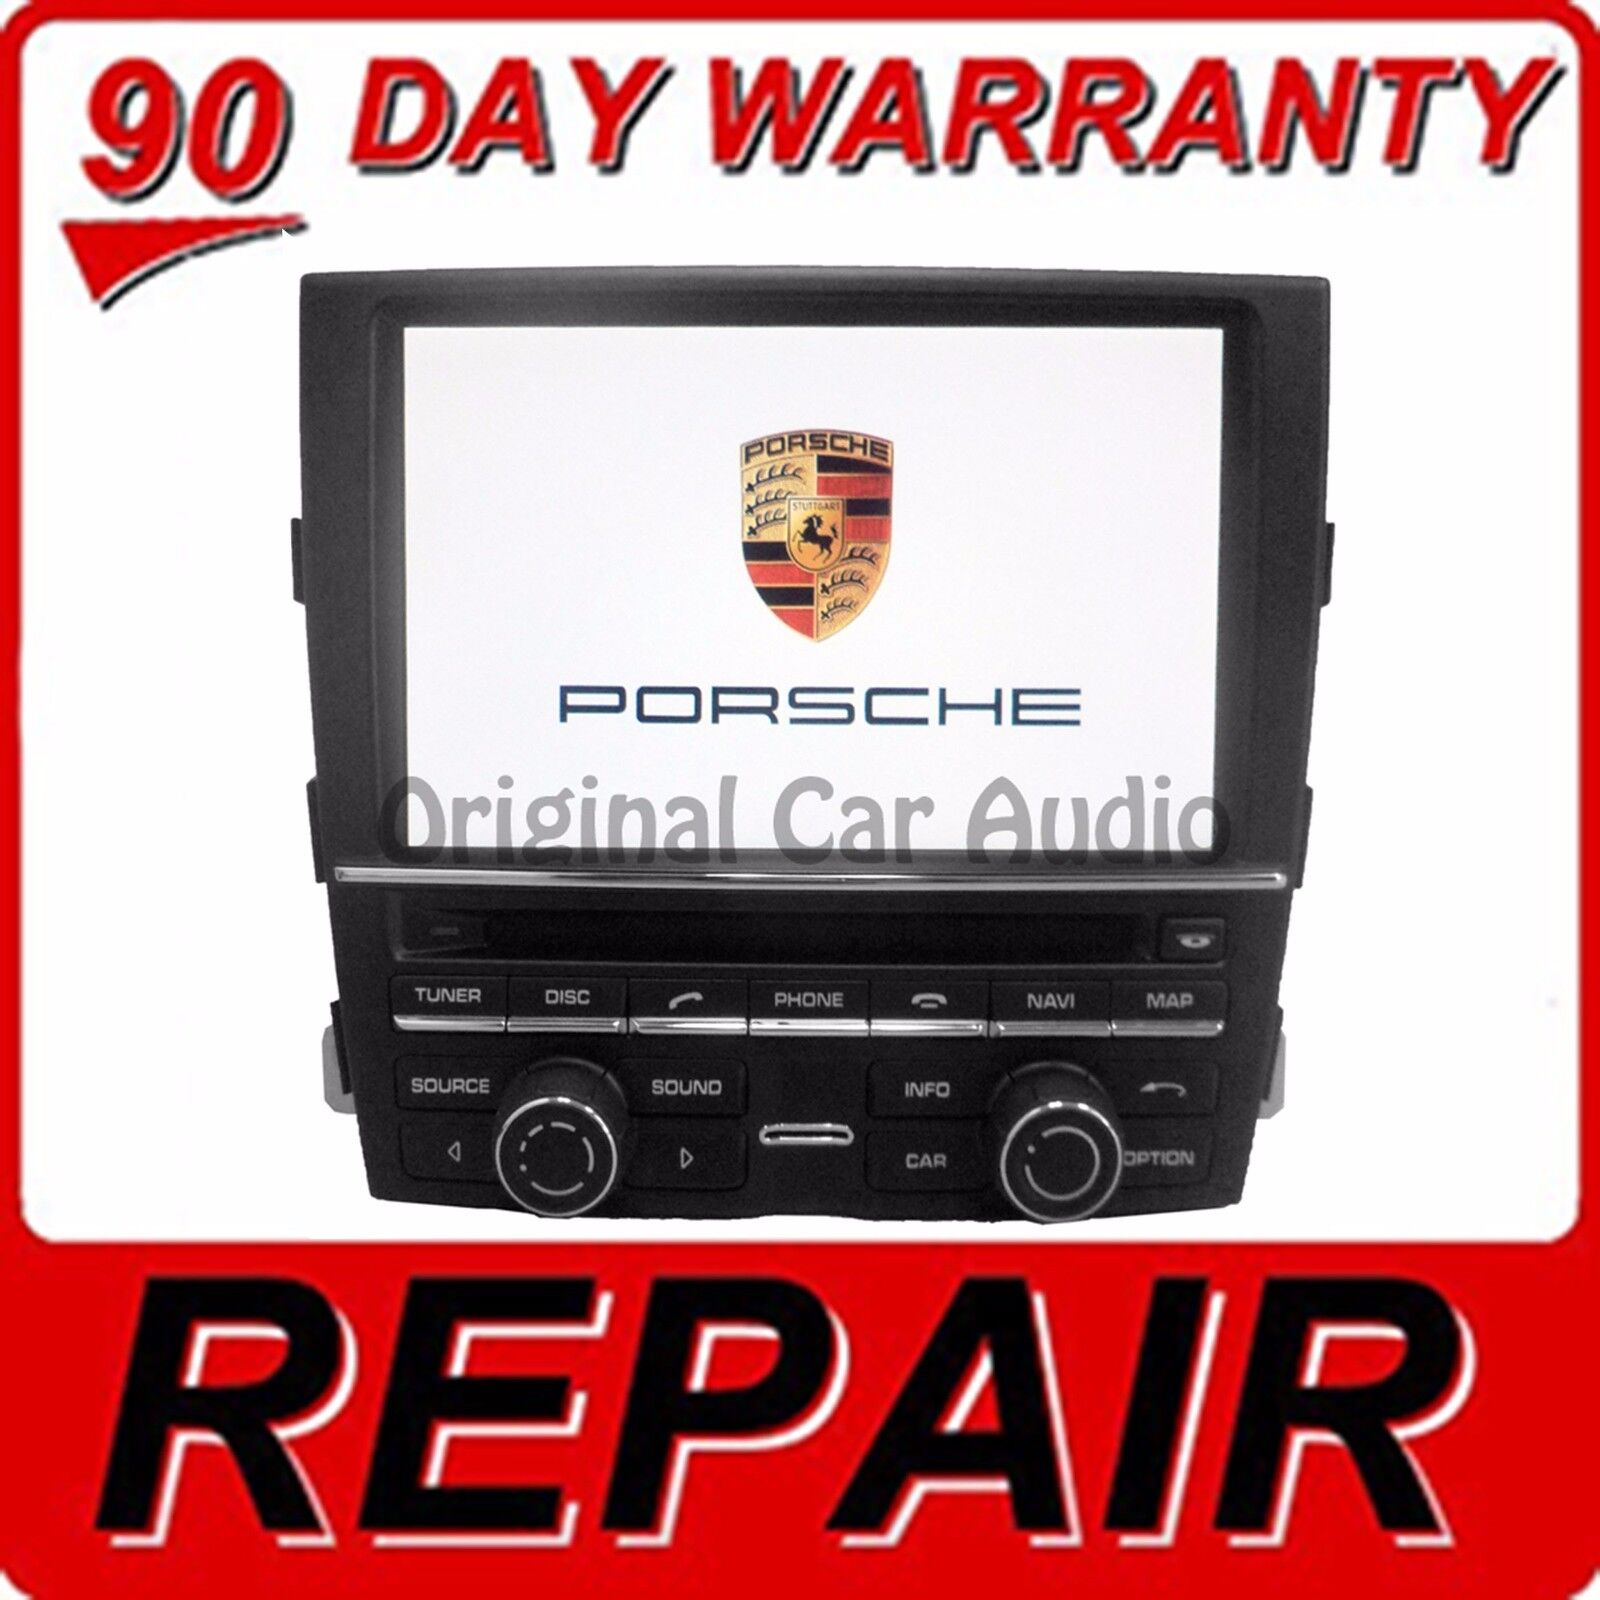 REPAIR 2010 2011 2012 2013 2014 2015 Porsche Navigation CD Player Repair ONLY